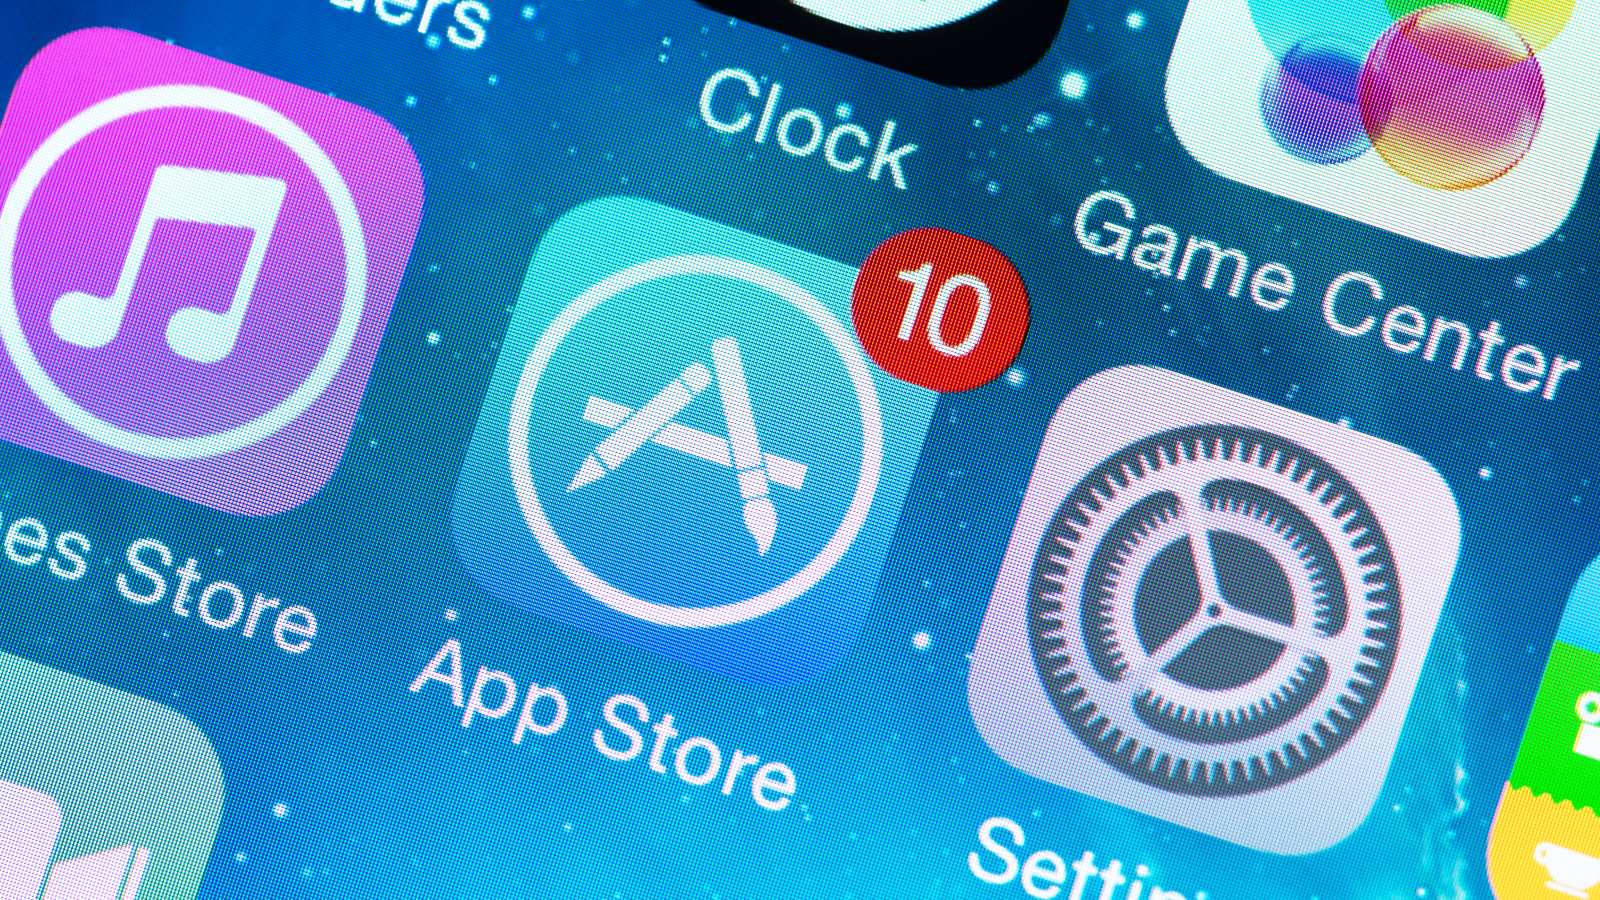 Цены в российском App Store могут вырасти с 1 января 2017 года